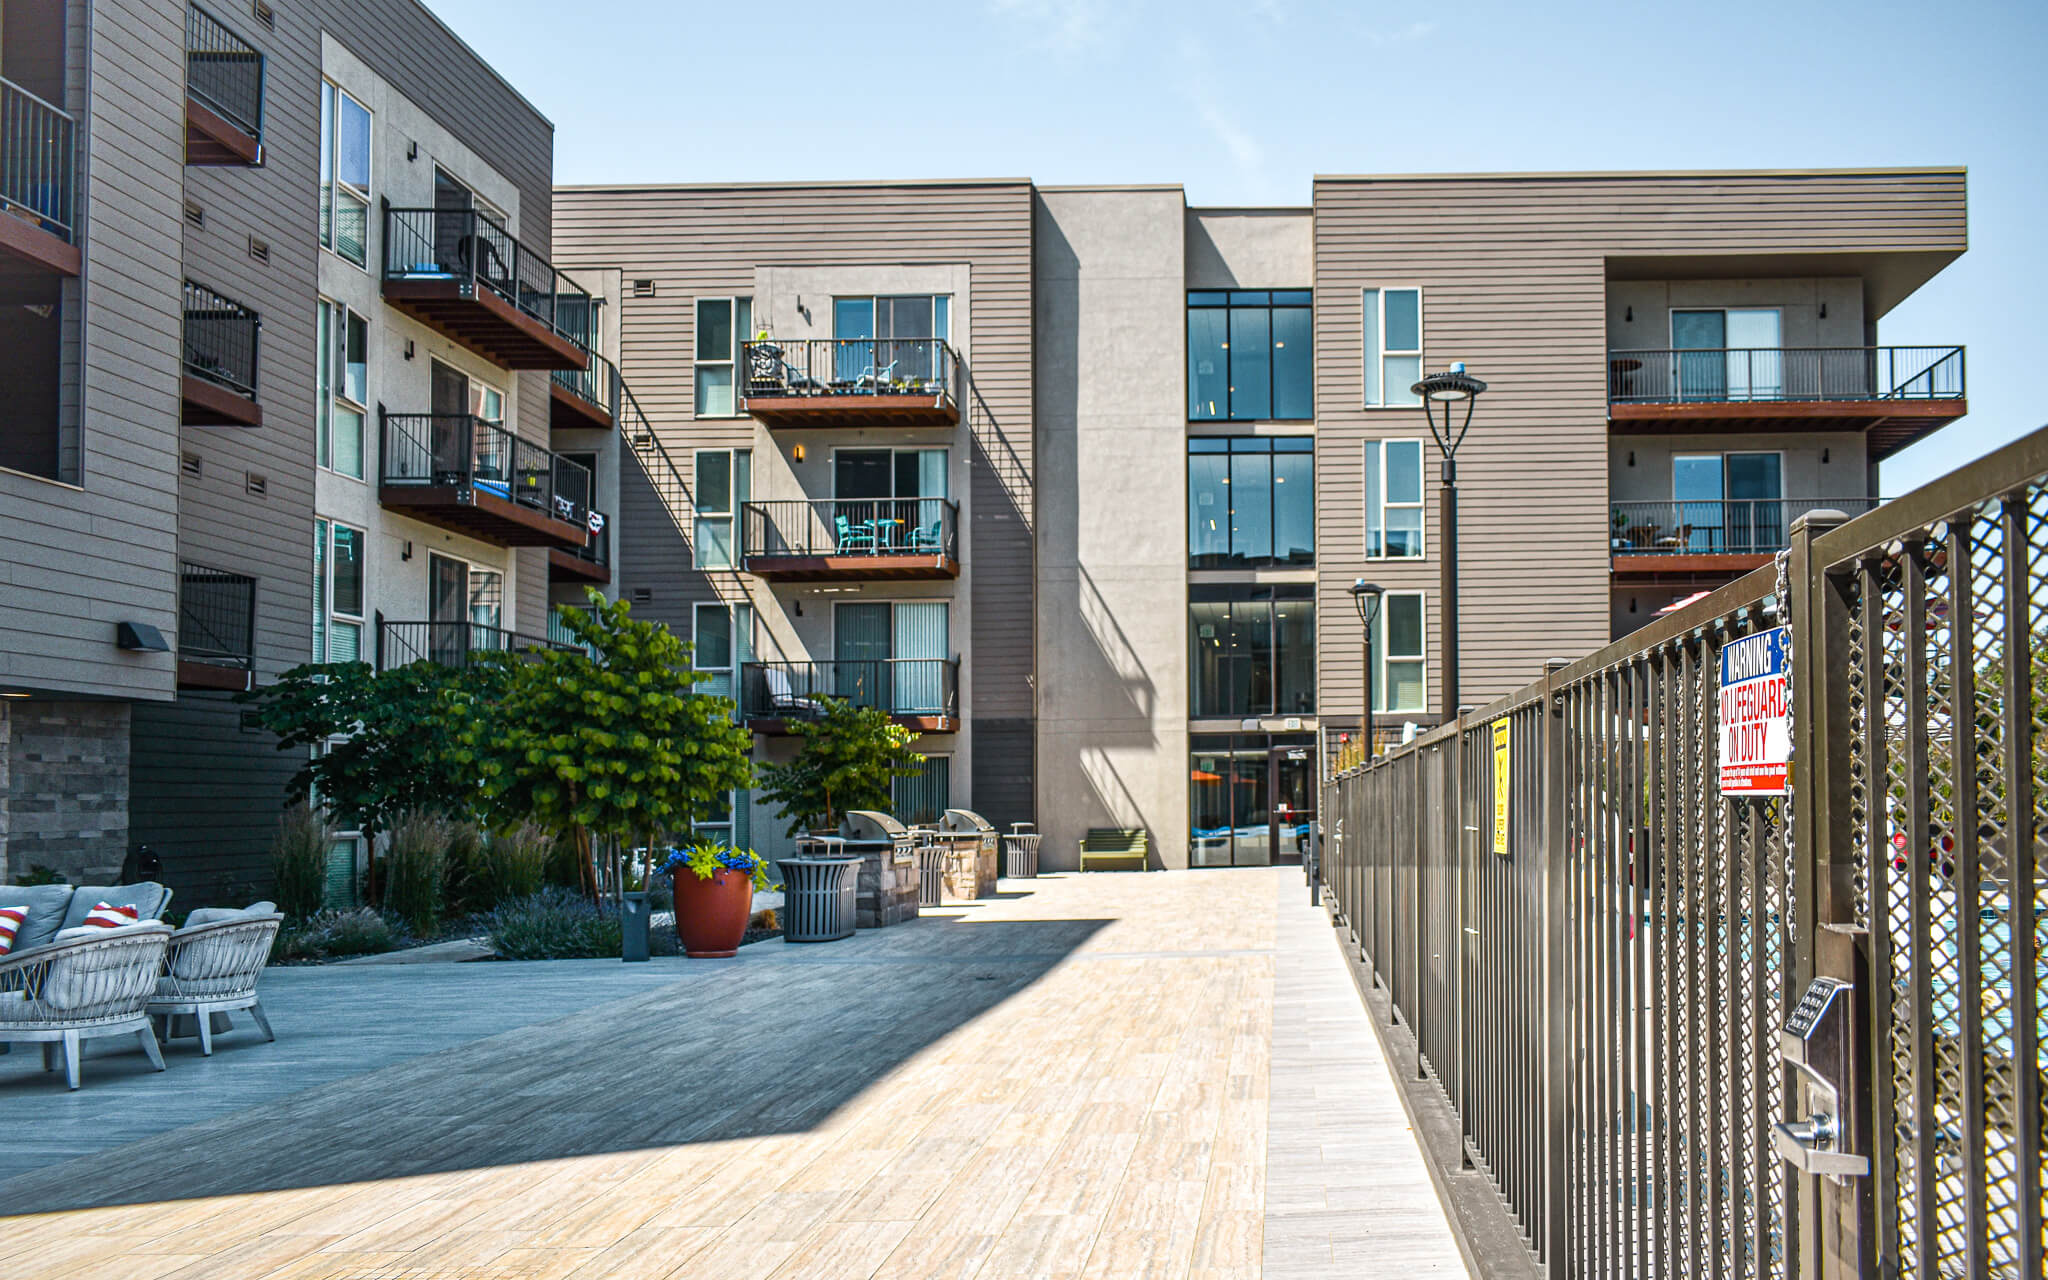 Paragon Corporate Housing - Park Place Apartments - Richland Washington